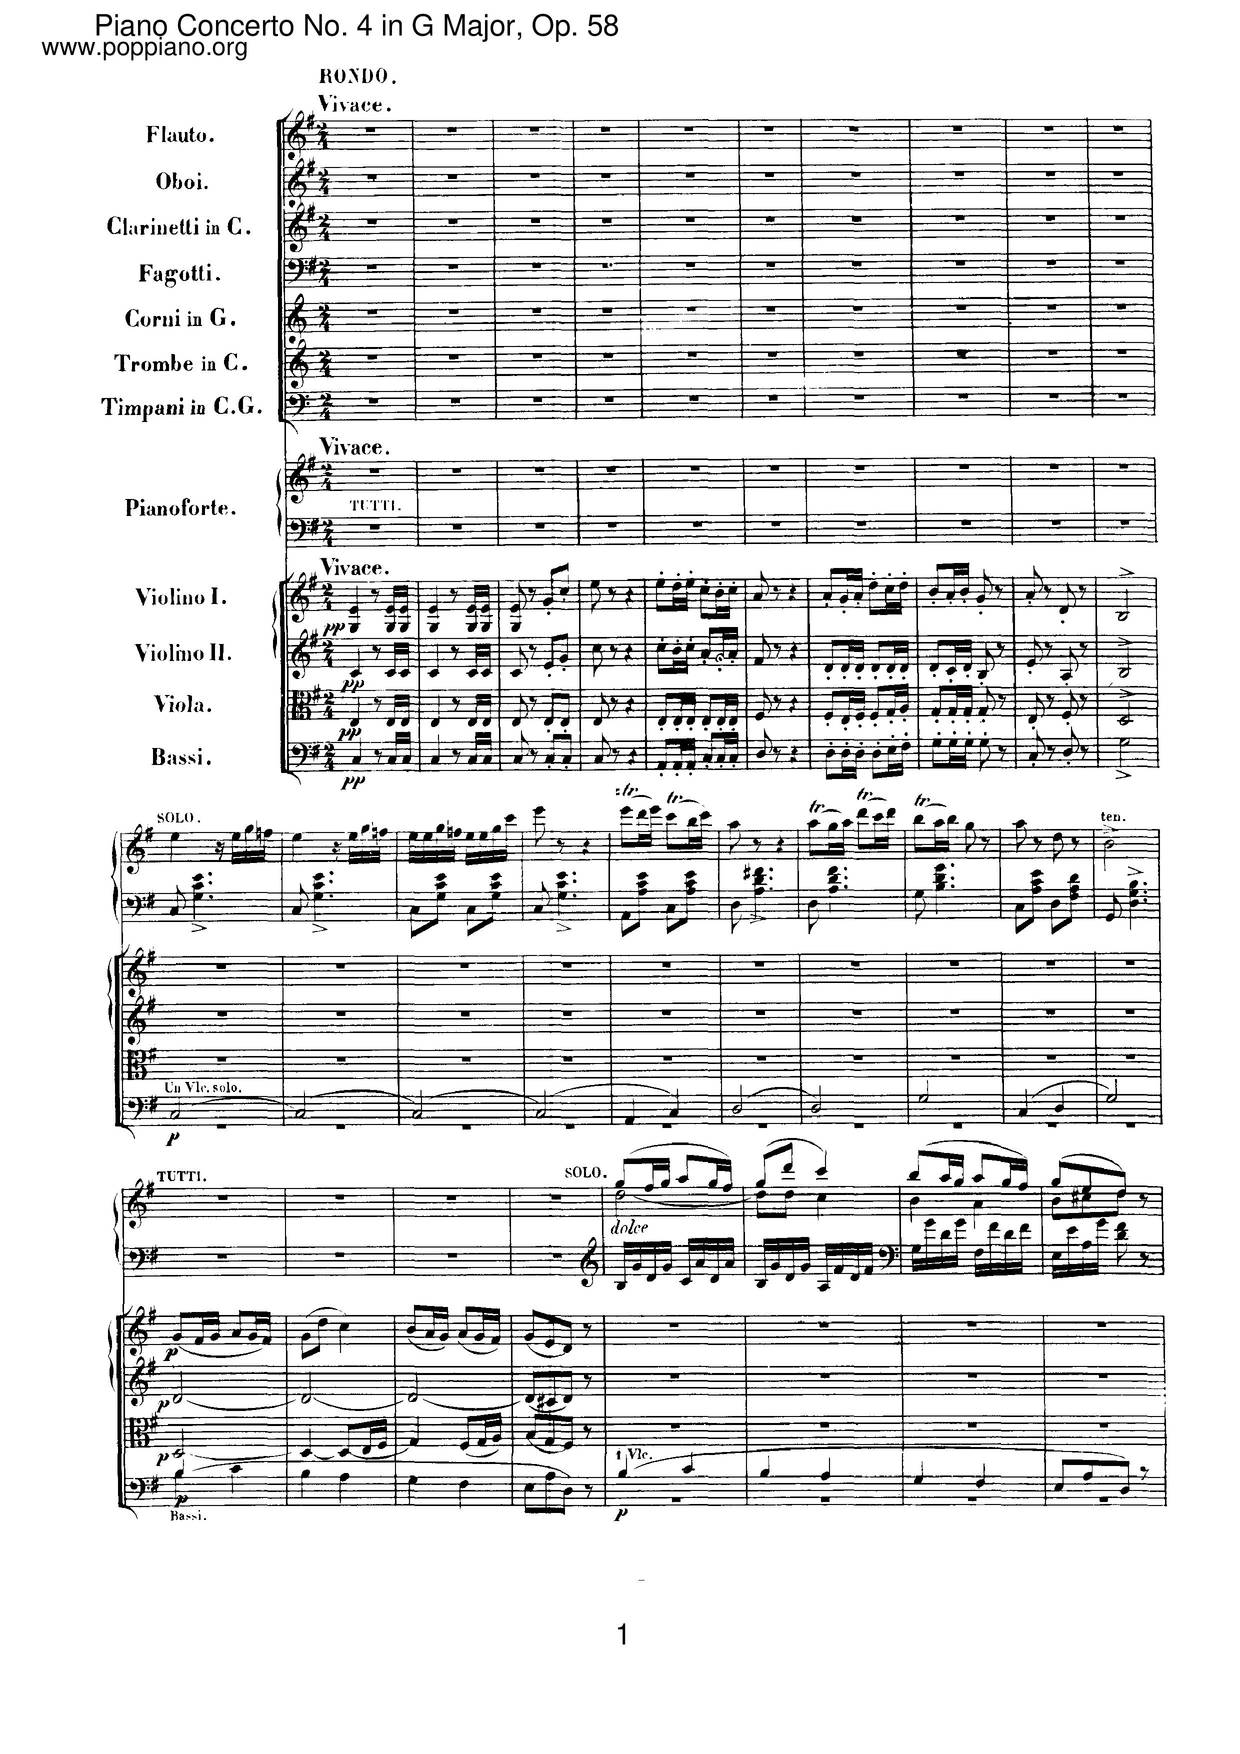 Piano Concerto No. 4 In G Major, Op. 58 Score